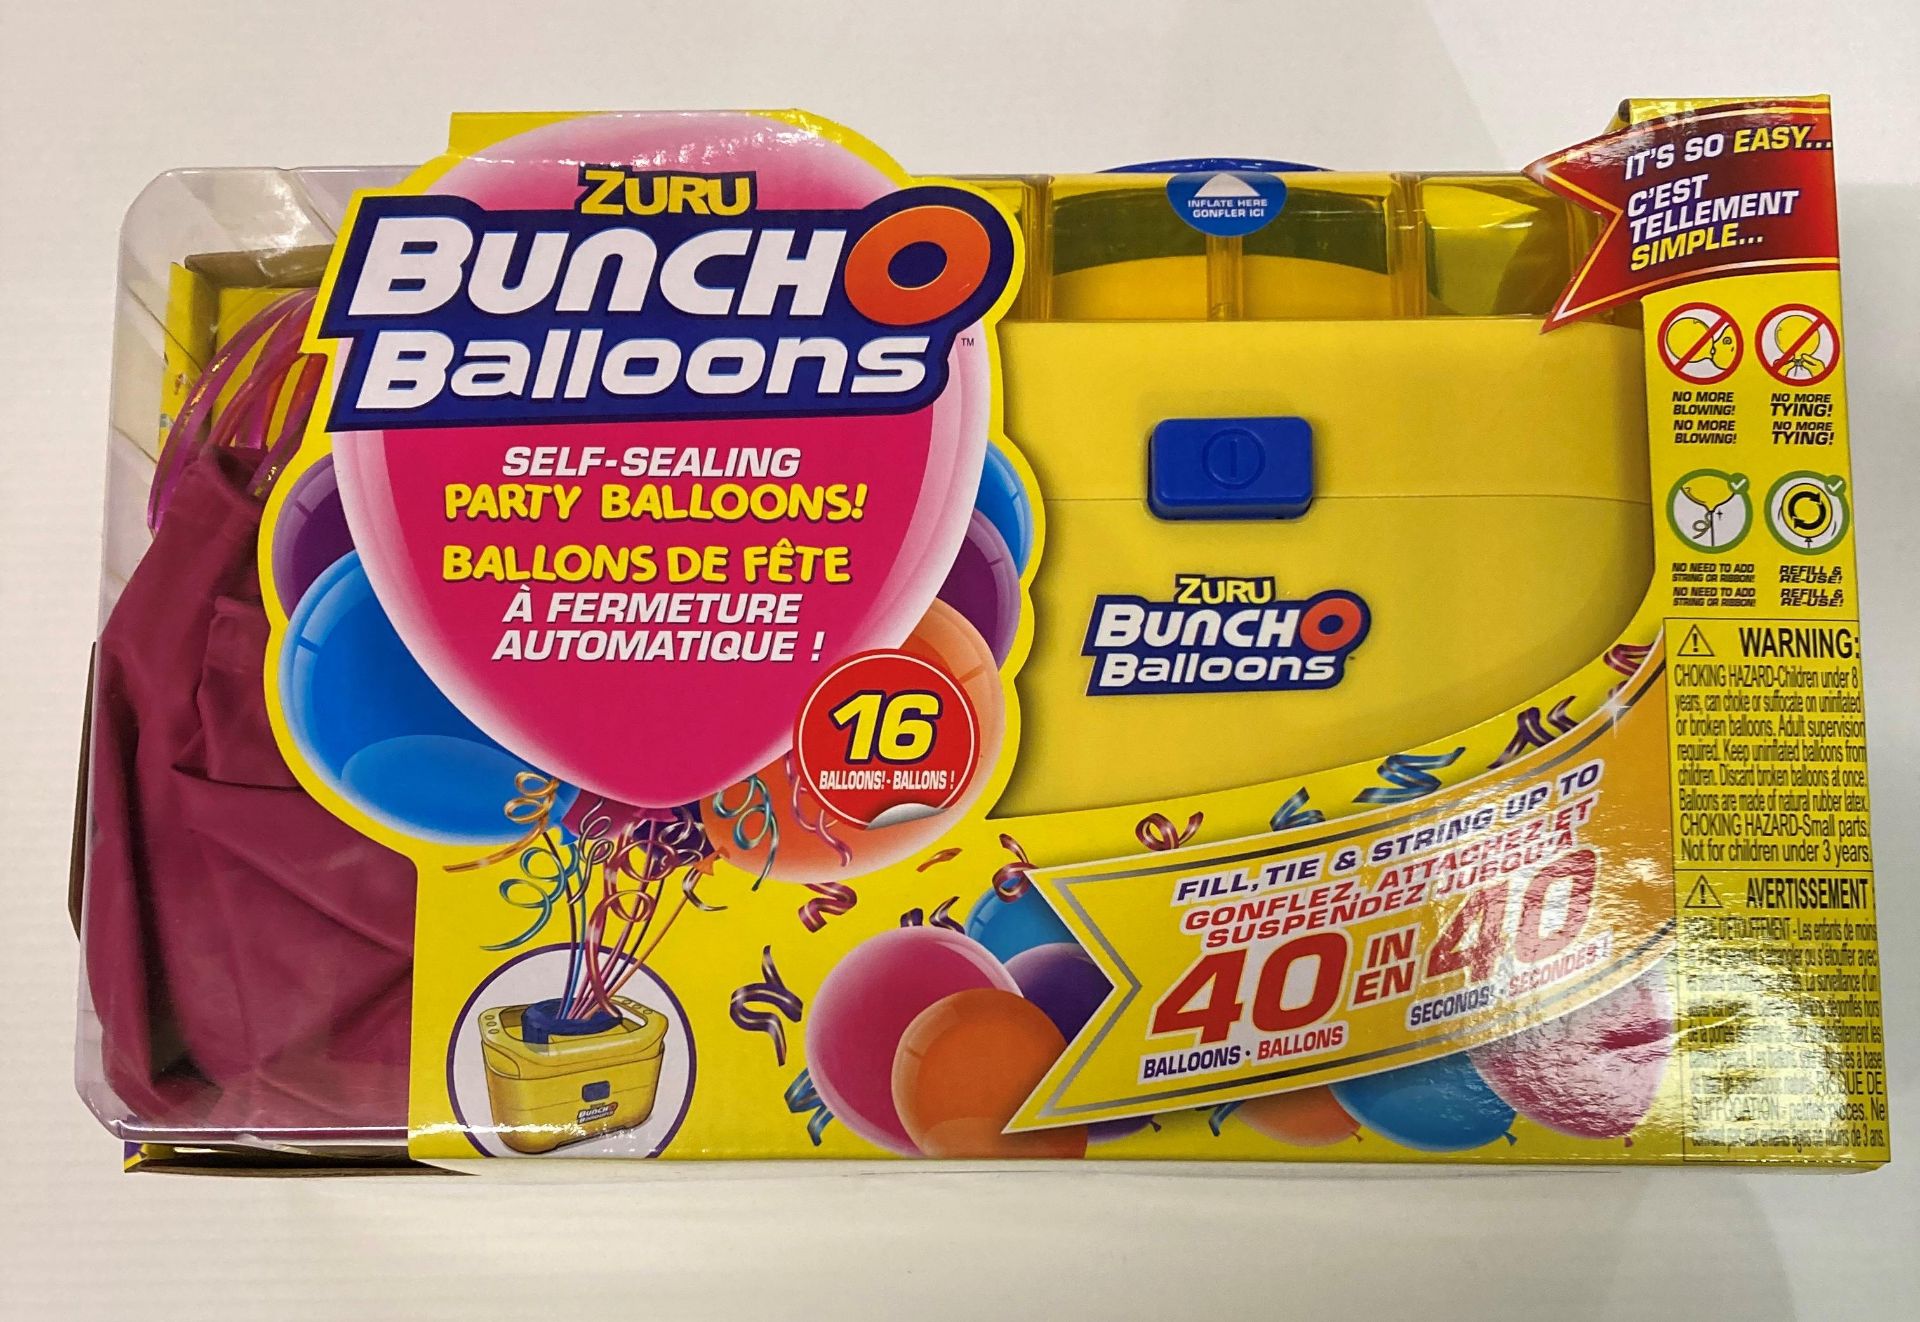 12 x Zuru Bunch O Balloons portable electric party balloon pump each with 16 self sealing balloons